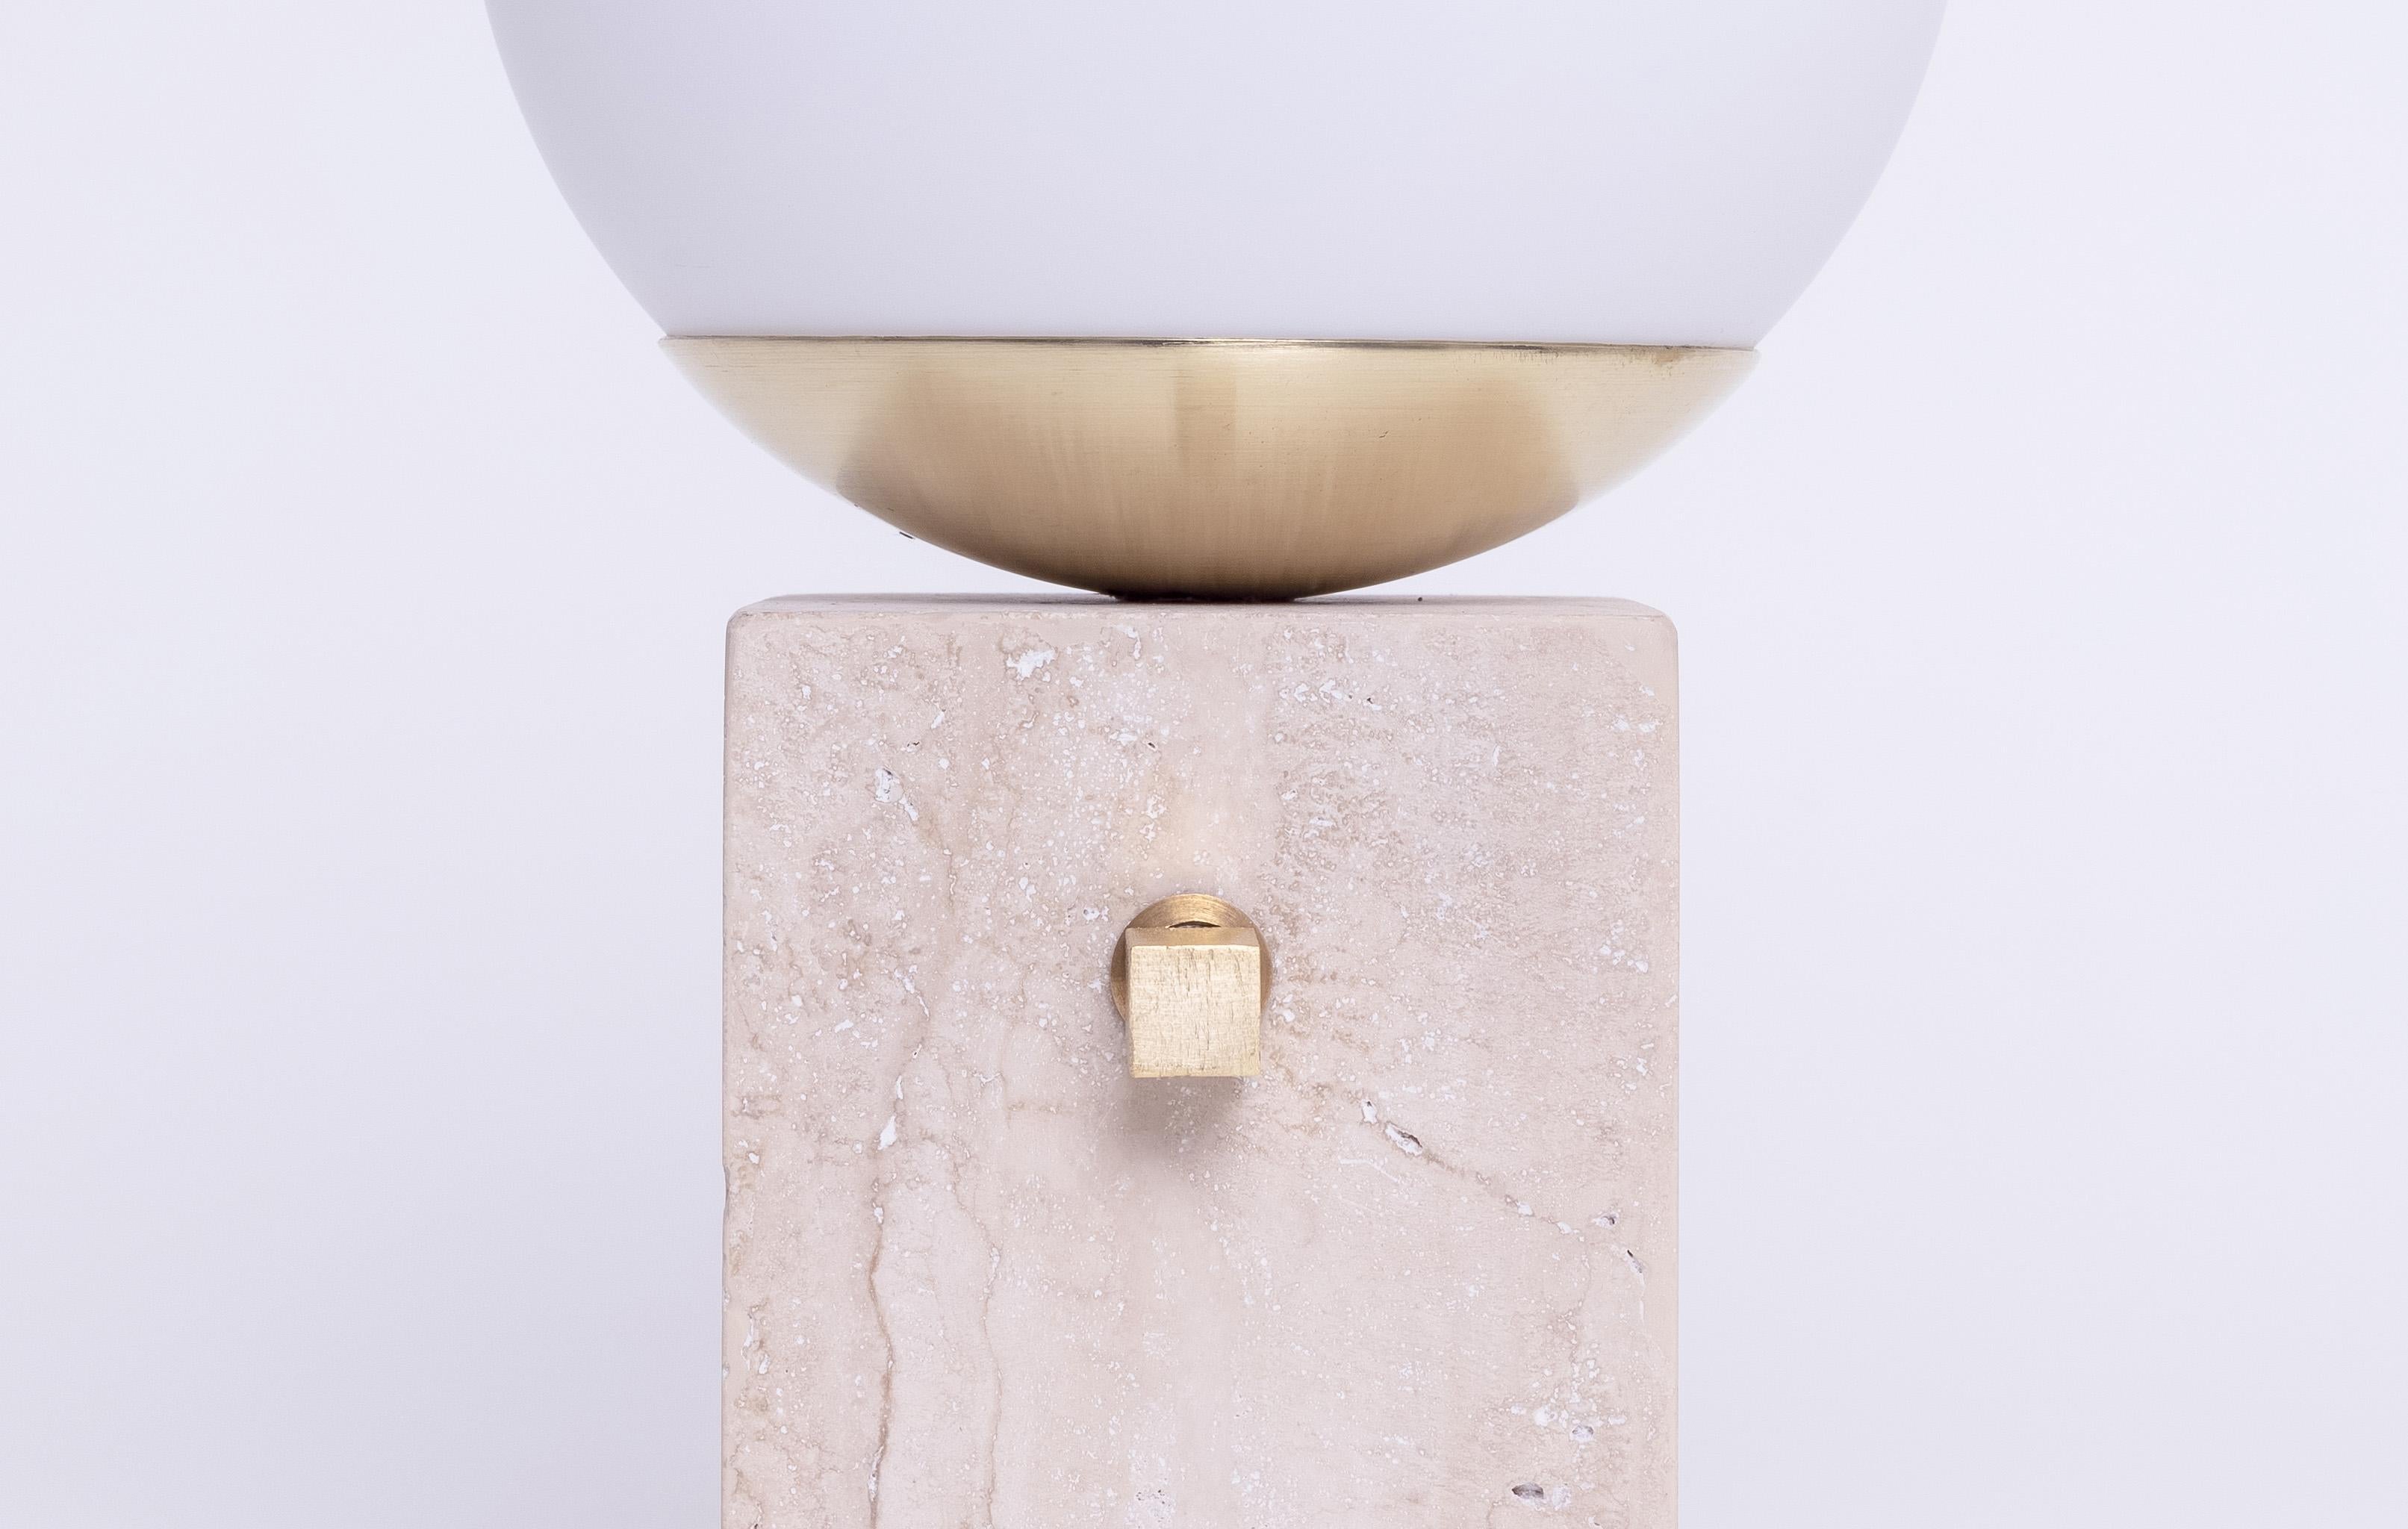 Lampes de table Globe en marbre brut avec interrupteur rotatif rétro en laiton sur la lampe. - Une variété d'autres granits et marbres est également disponible sur demande.

Petit Bonhomme est une lampe minimaliste qui respire la sérénité et la